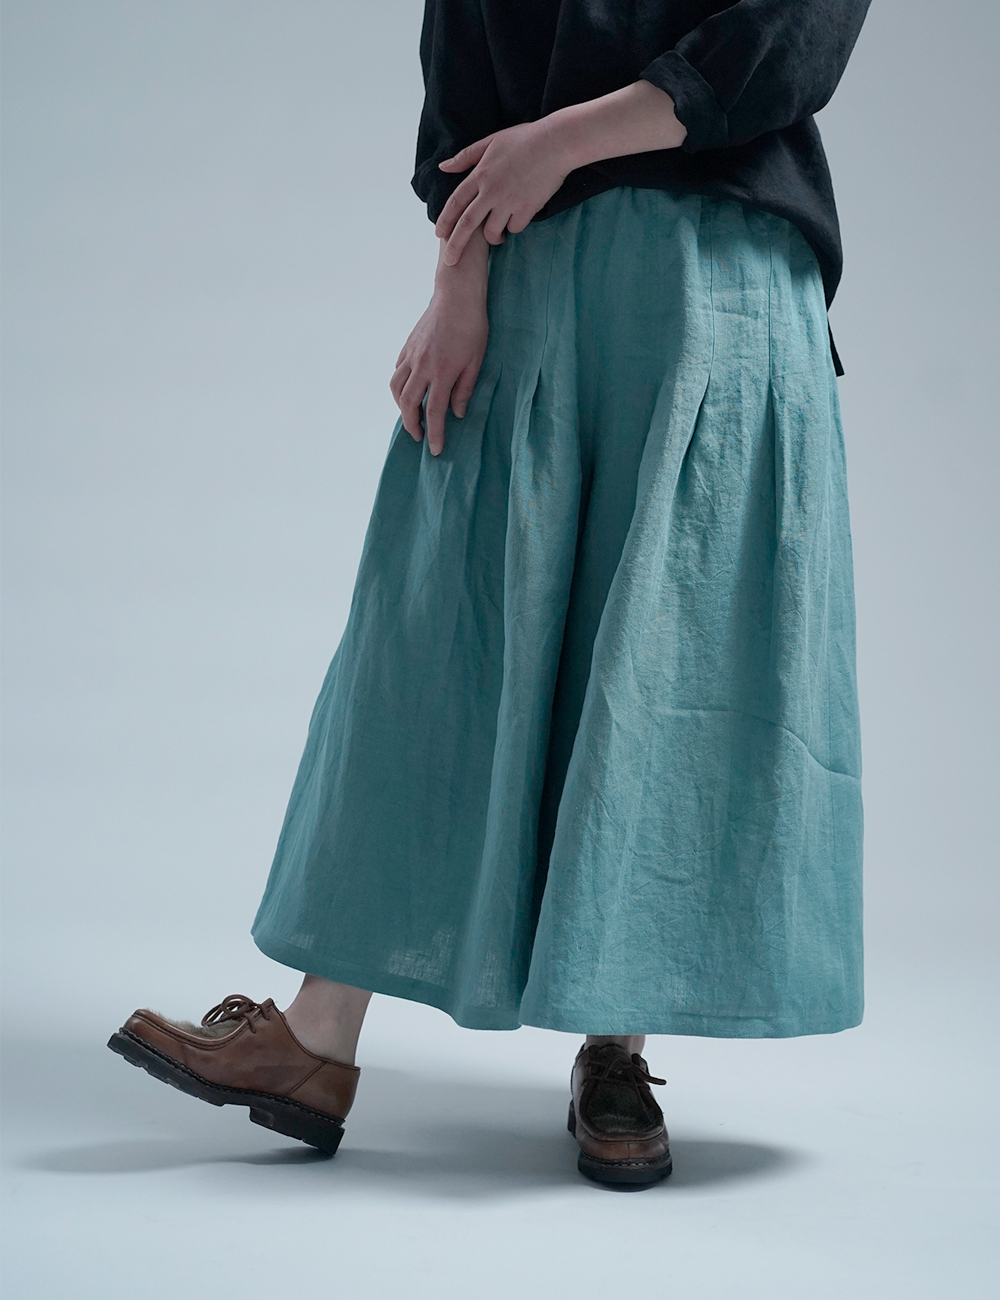 【見習い製作】Linen Pants 袴(はかま)パンツ / 白群(びゃくぐん) b002h-byg2